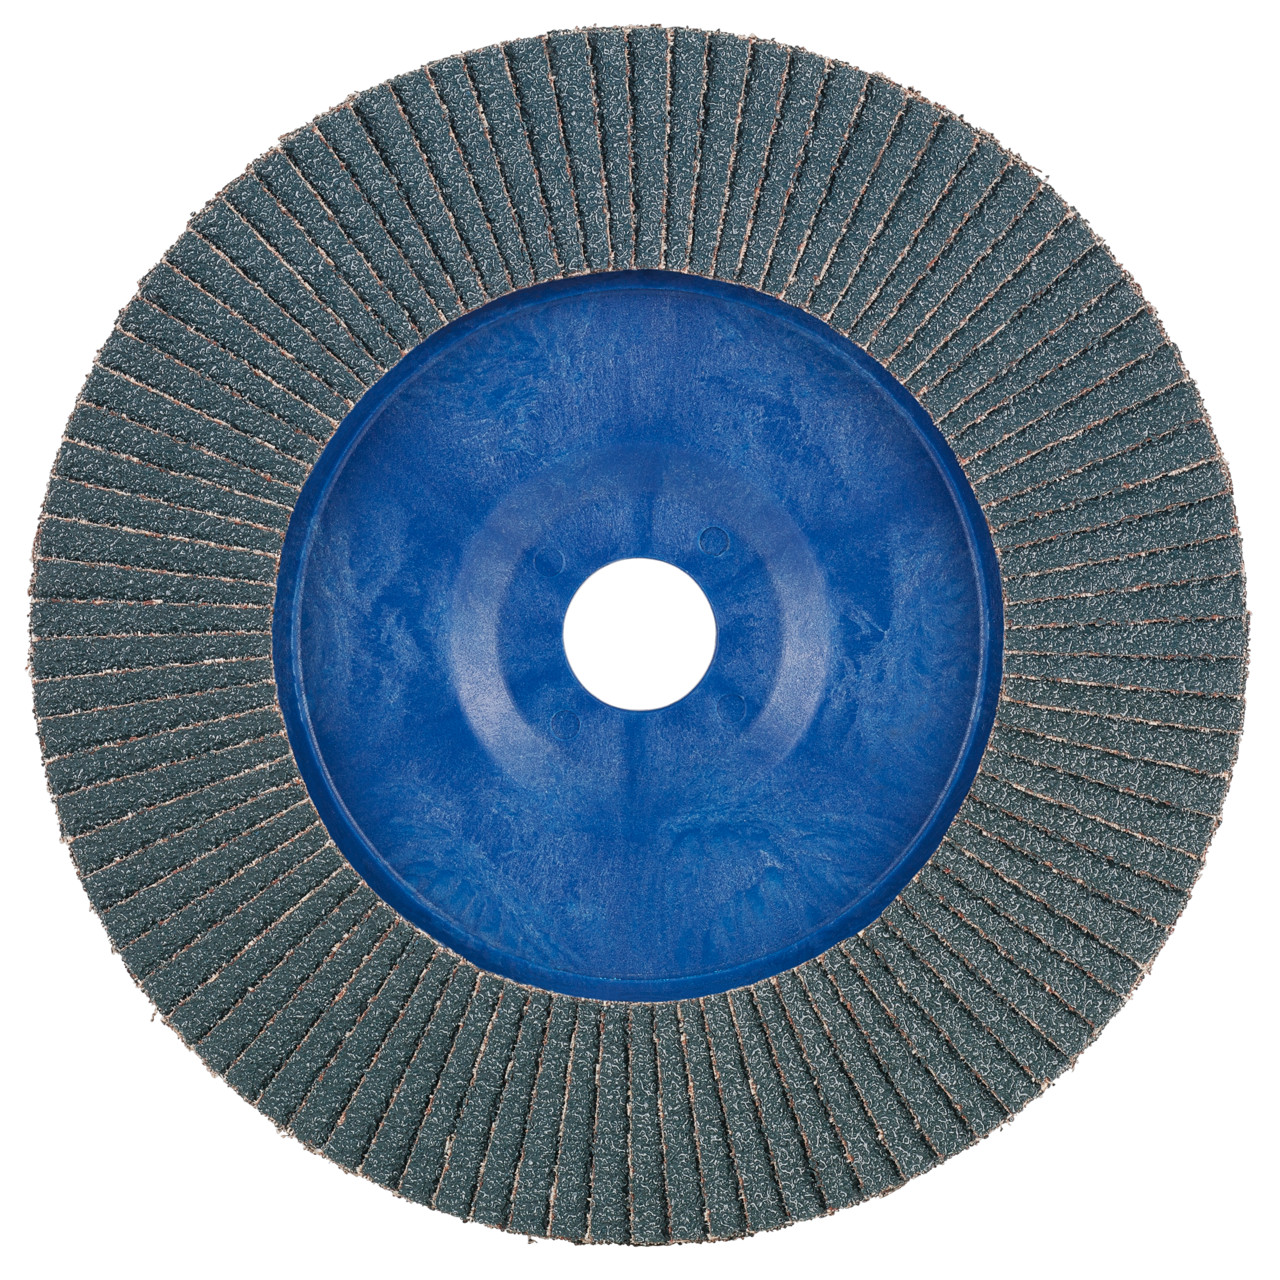 Tyrolit Rondelle éventail DxH 115x22,2 2en1 pour l'acier et l'inox, P60, forme : 28N - version droite (corps de support en plastique), art. 847924